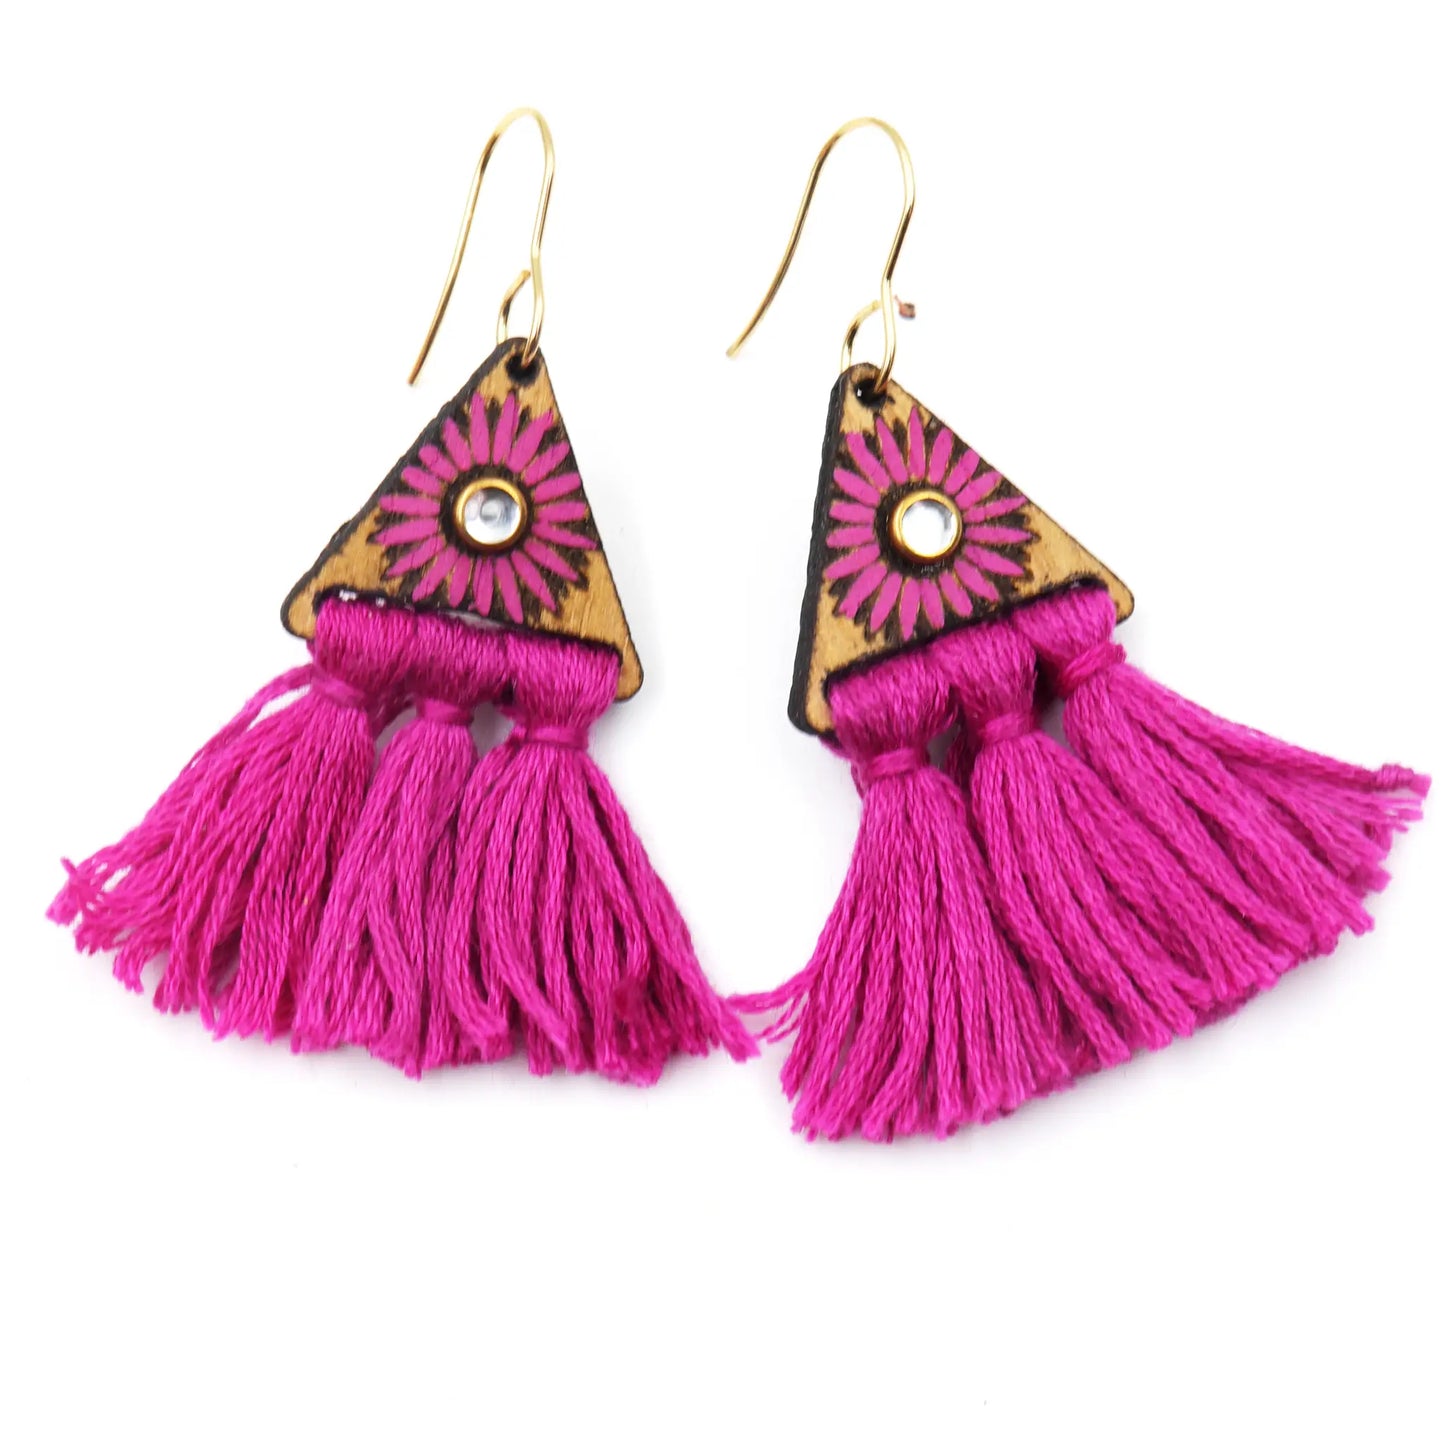 Tassel Earrings | Triangular macrame earrings | wooden floral earrings | Dangle Earrings for women